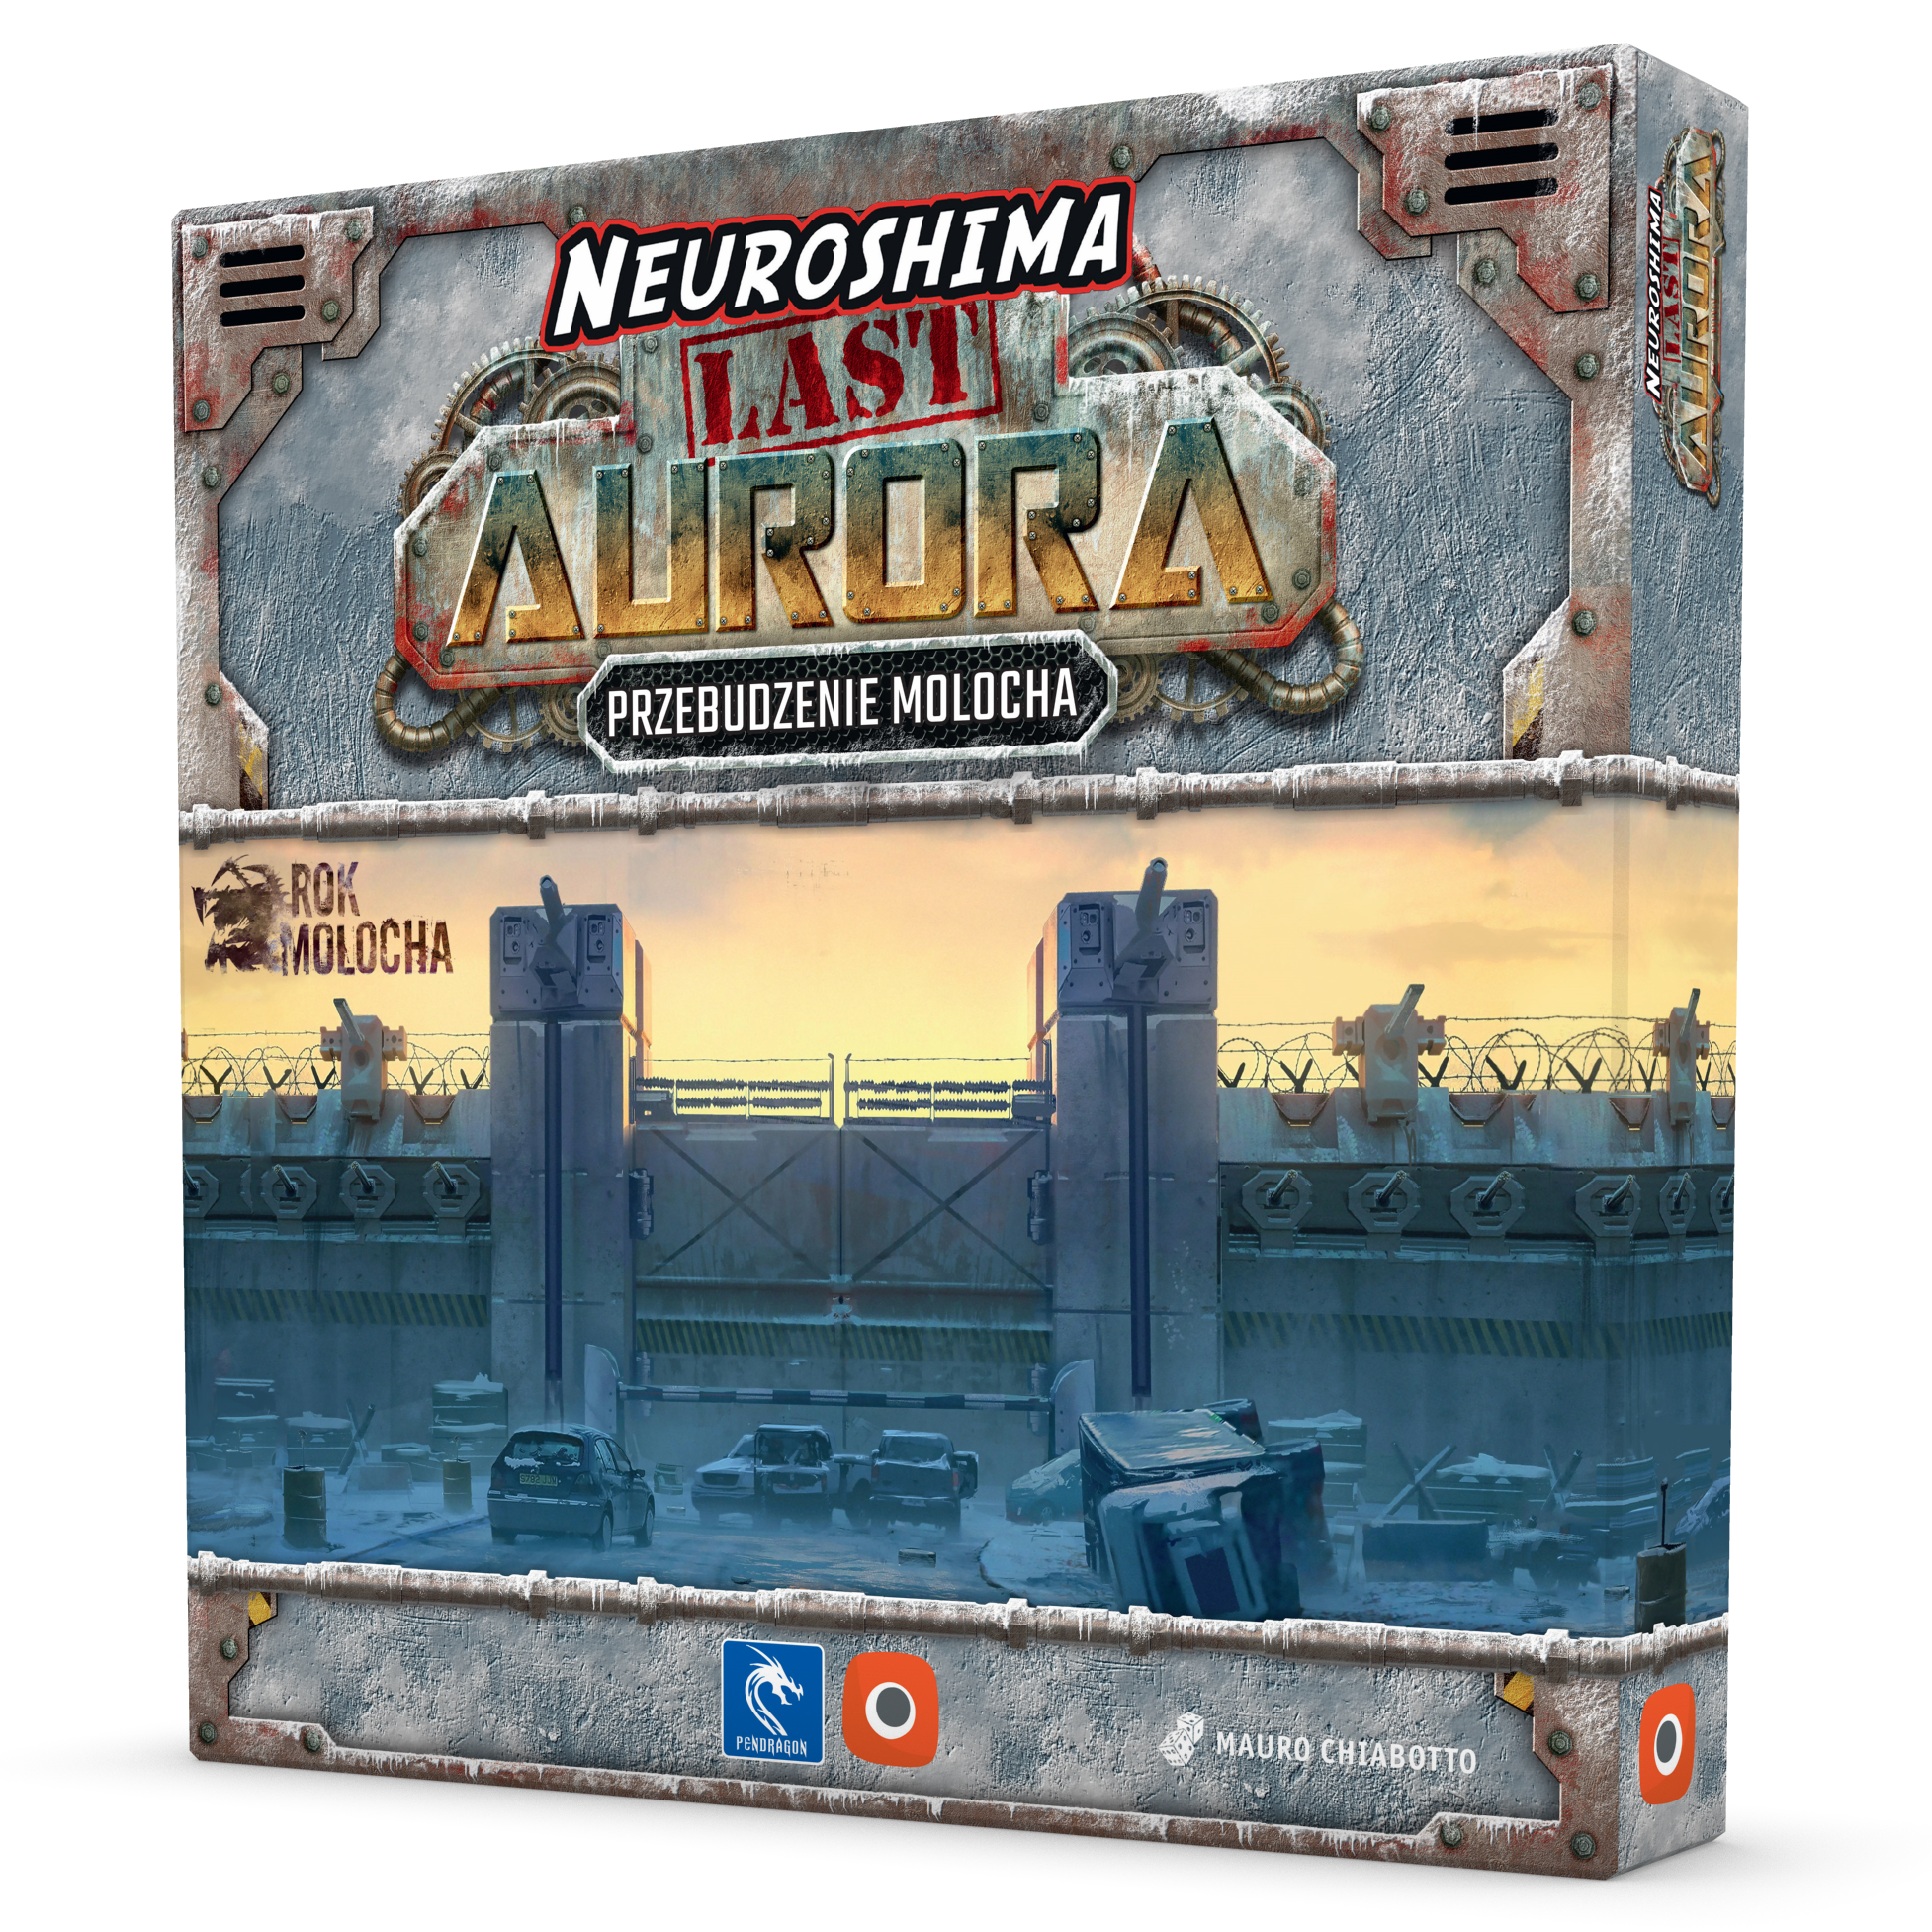 Neuroshima: Last Aurora: Przebudzenie Molocha